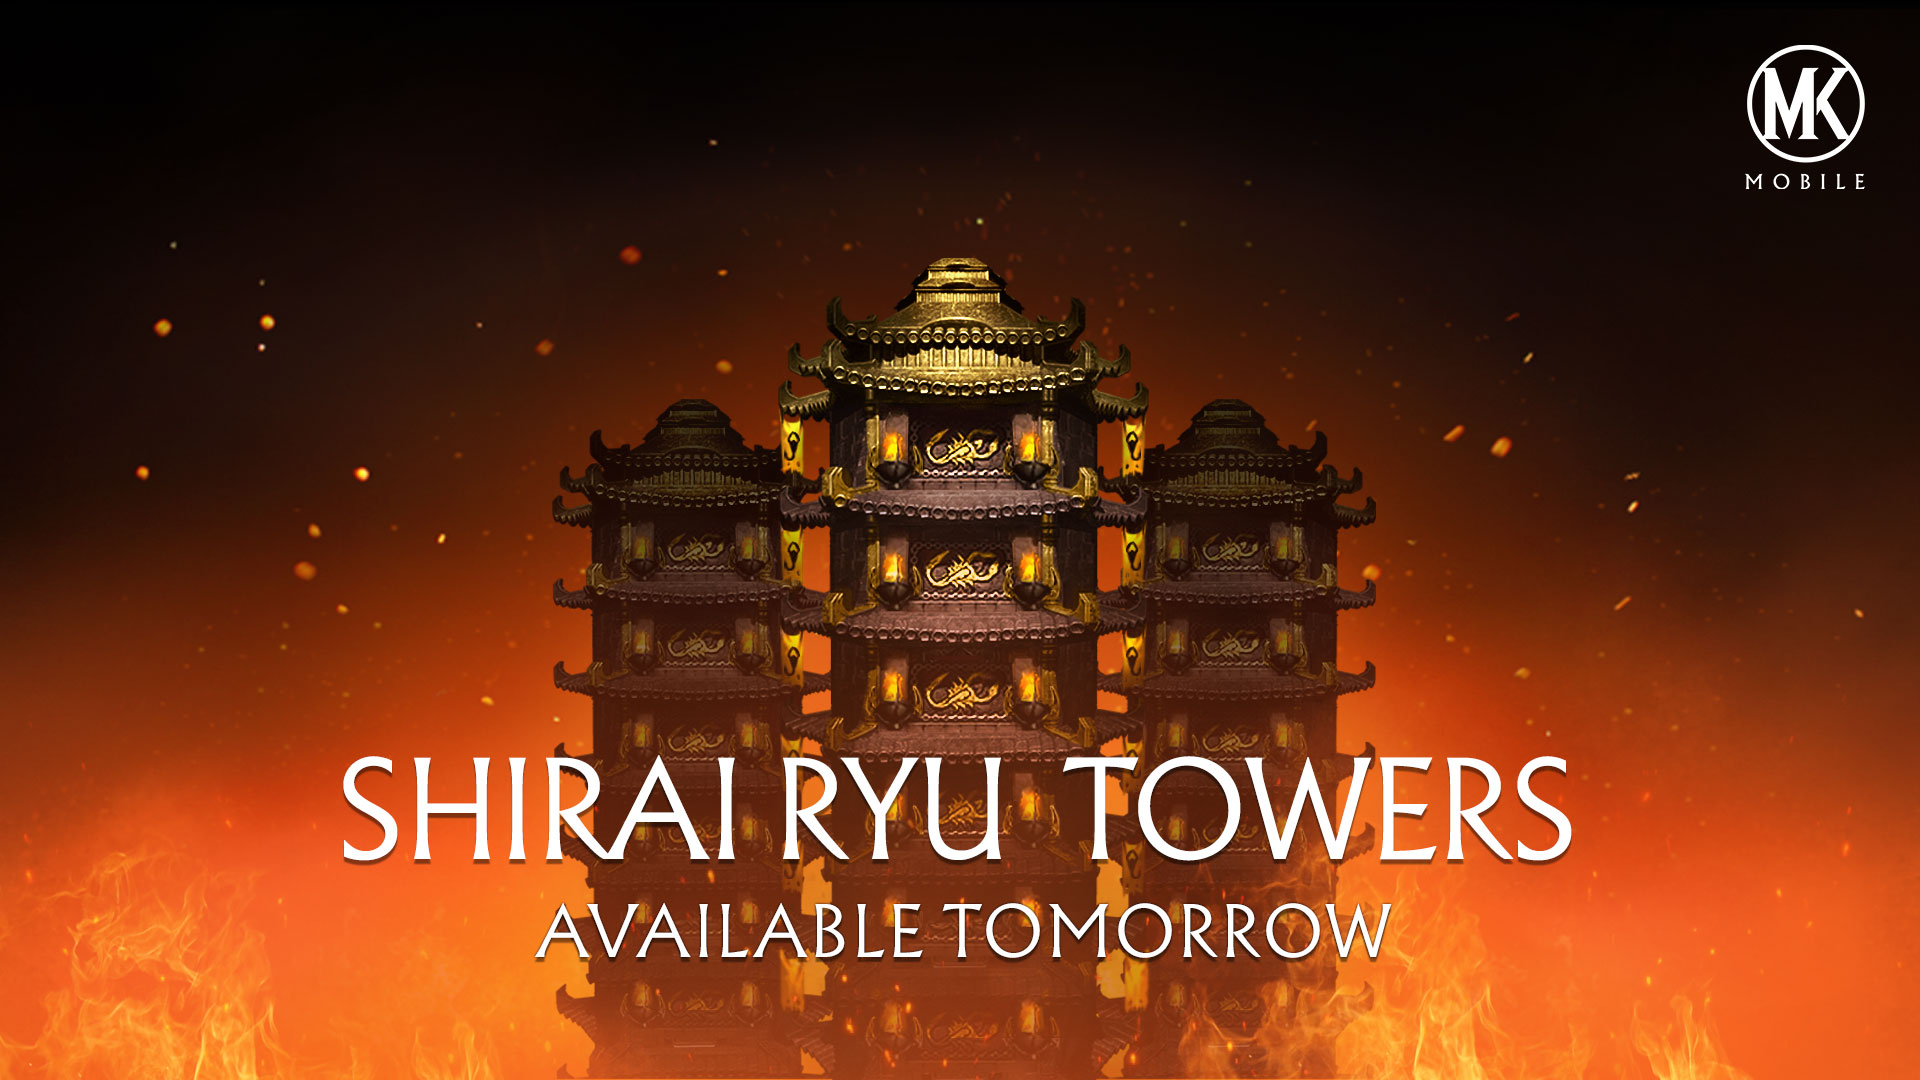 Mortal Kombat Mobile Update Brings Shirai Ryu Towers - Mortal